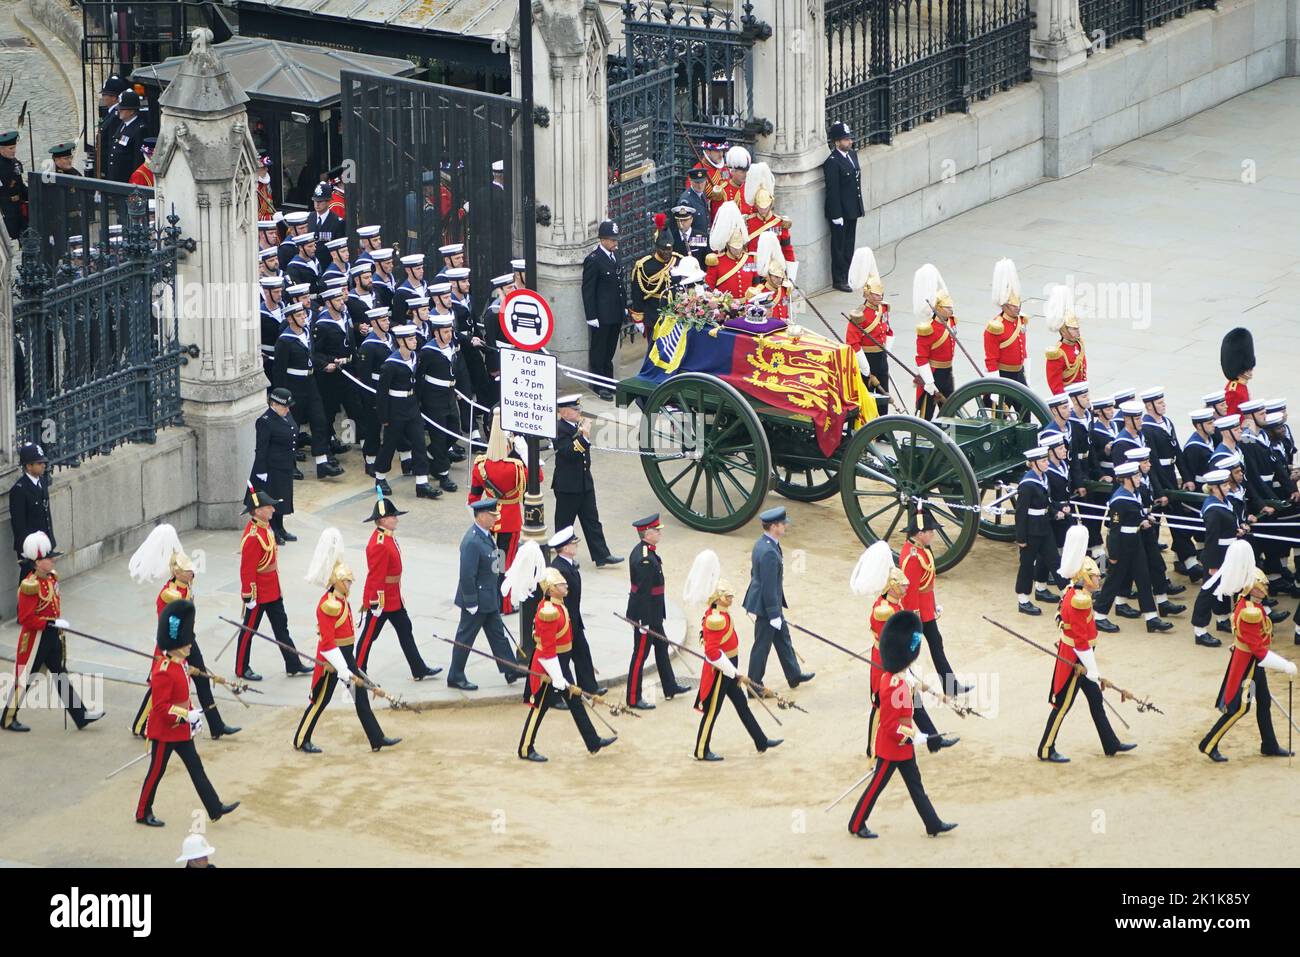 El State Gun Carriage lleva el ataúd de la Reina Isabel II, cubierto en el Royal Standard con la Corona Imperial del Estado y el orbe y cetro del Soberano, al salir del Westminster Hall para el Funeral del Estado en la Abadía de Westminster, Londres. Fecha de la foto: Lunes 19 de septiembre de 2022. Foto de stock